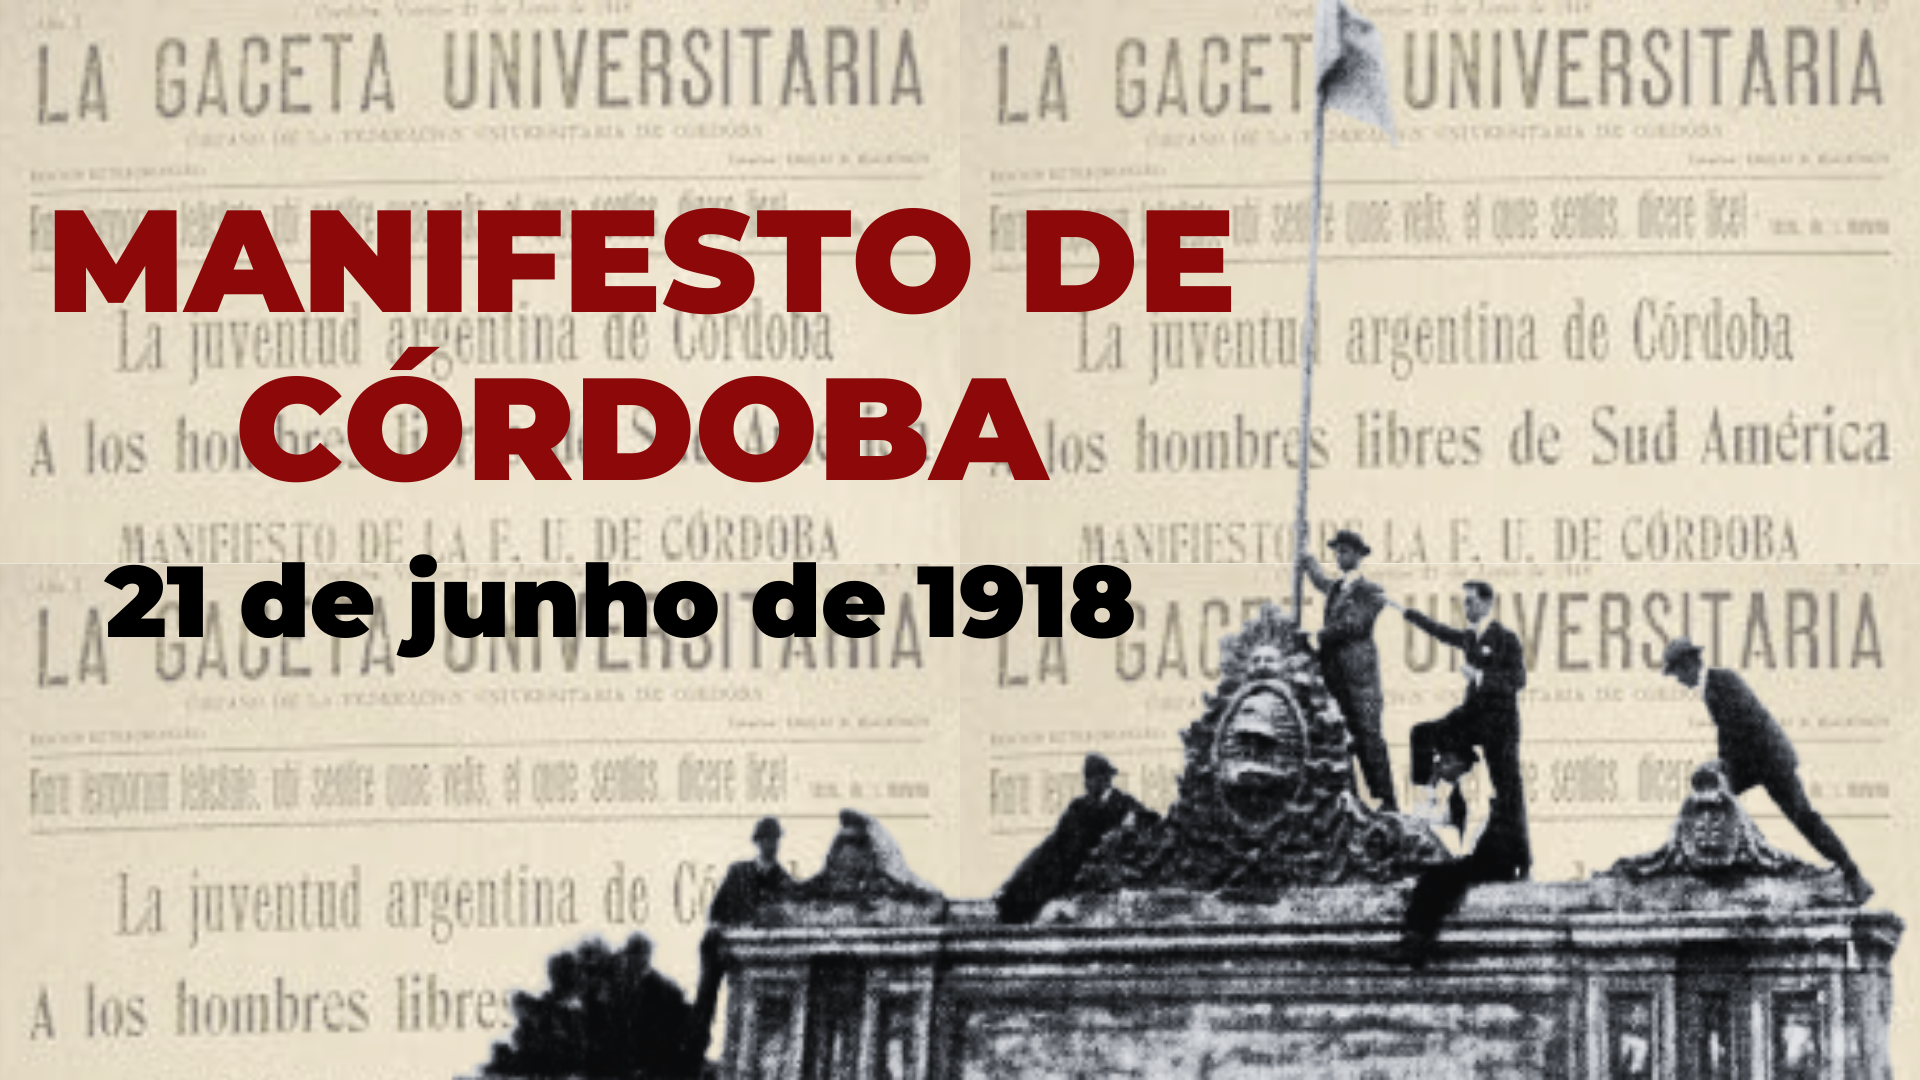 Manifesto de Córdoba de 1918